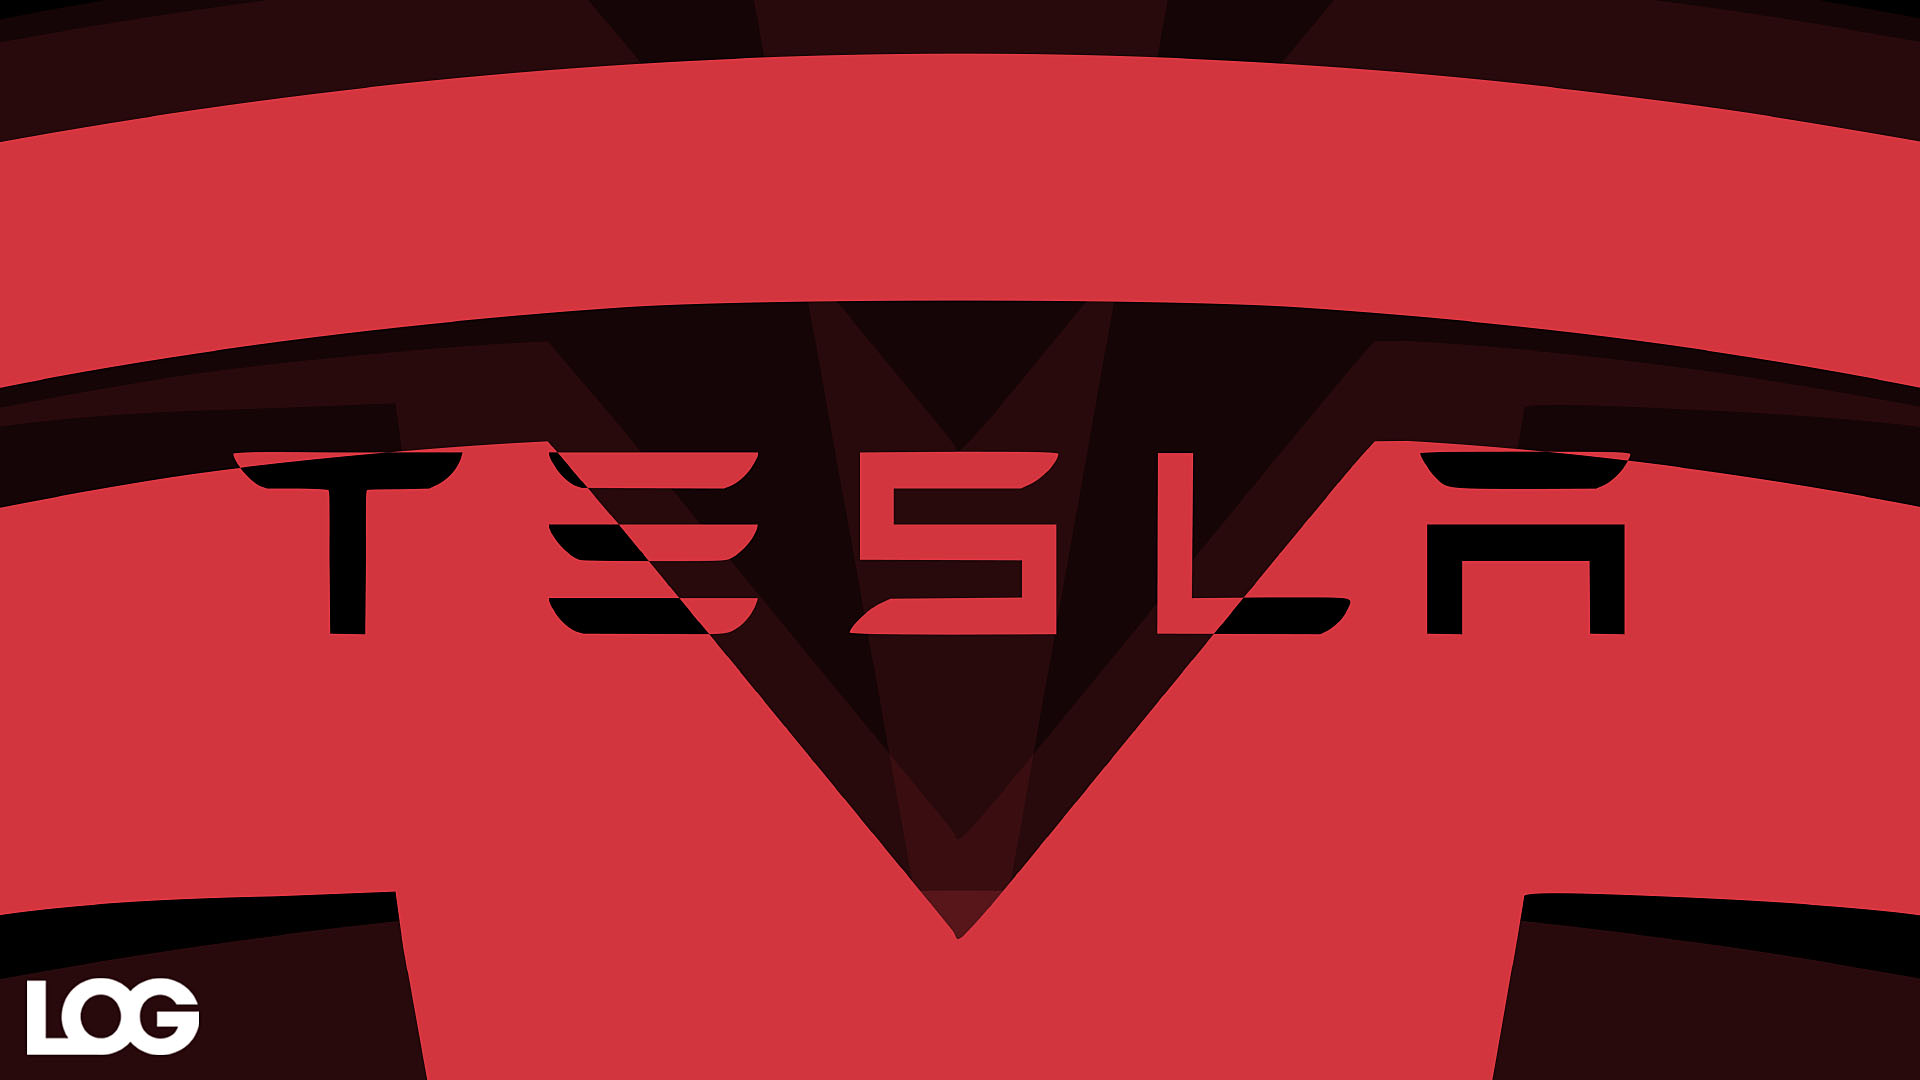 25 Bin Dolarlık Tesla İçin Yine İptal Edildi Haberleri Geliyor